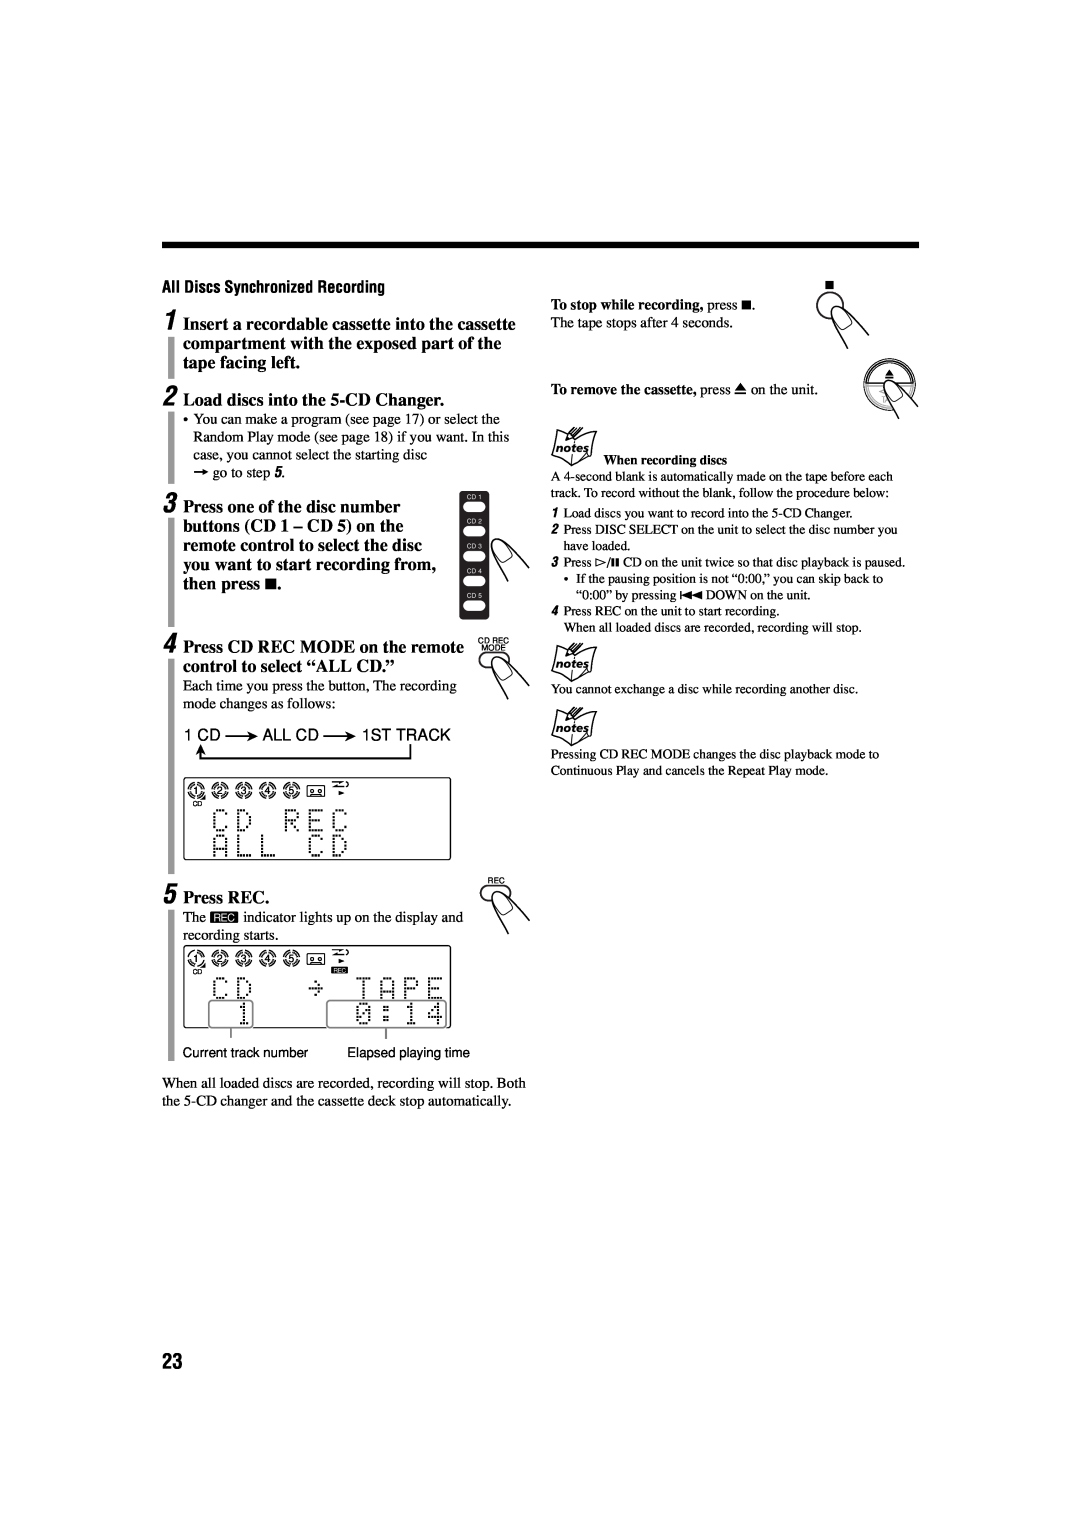 JVC CA-FSB70 manual Load discs into the 5-CDChanger, Press REC 